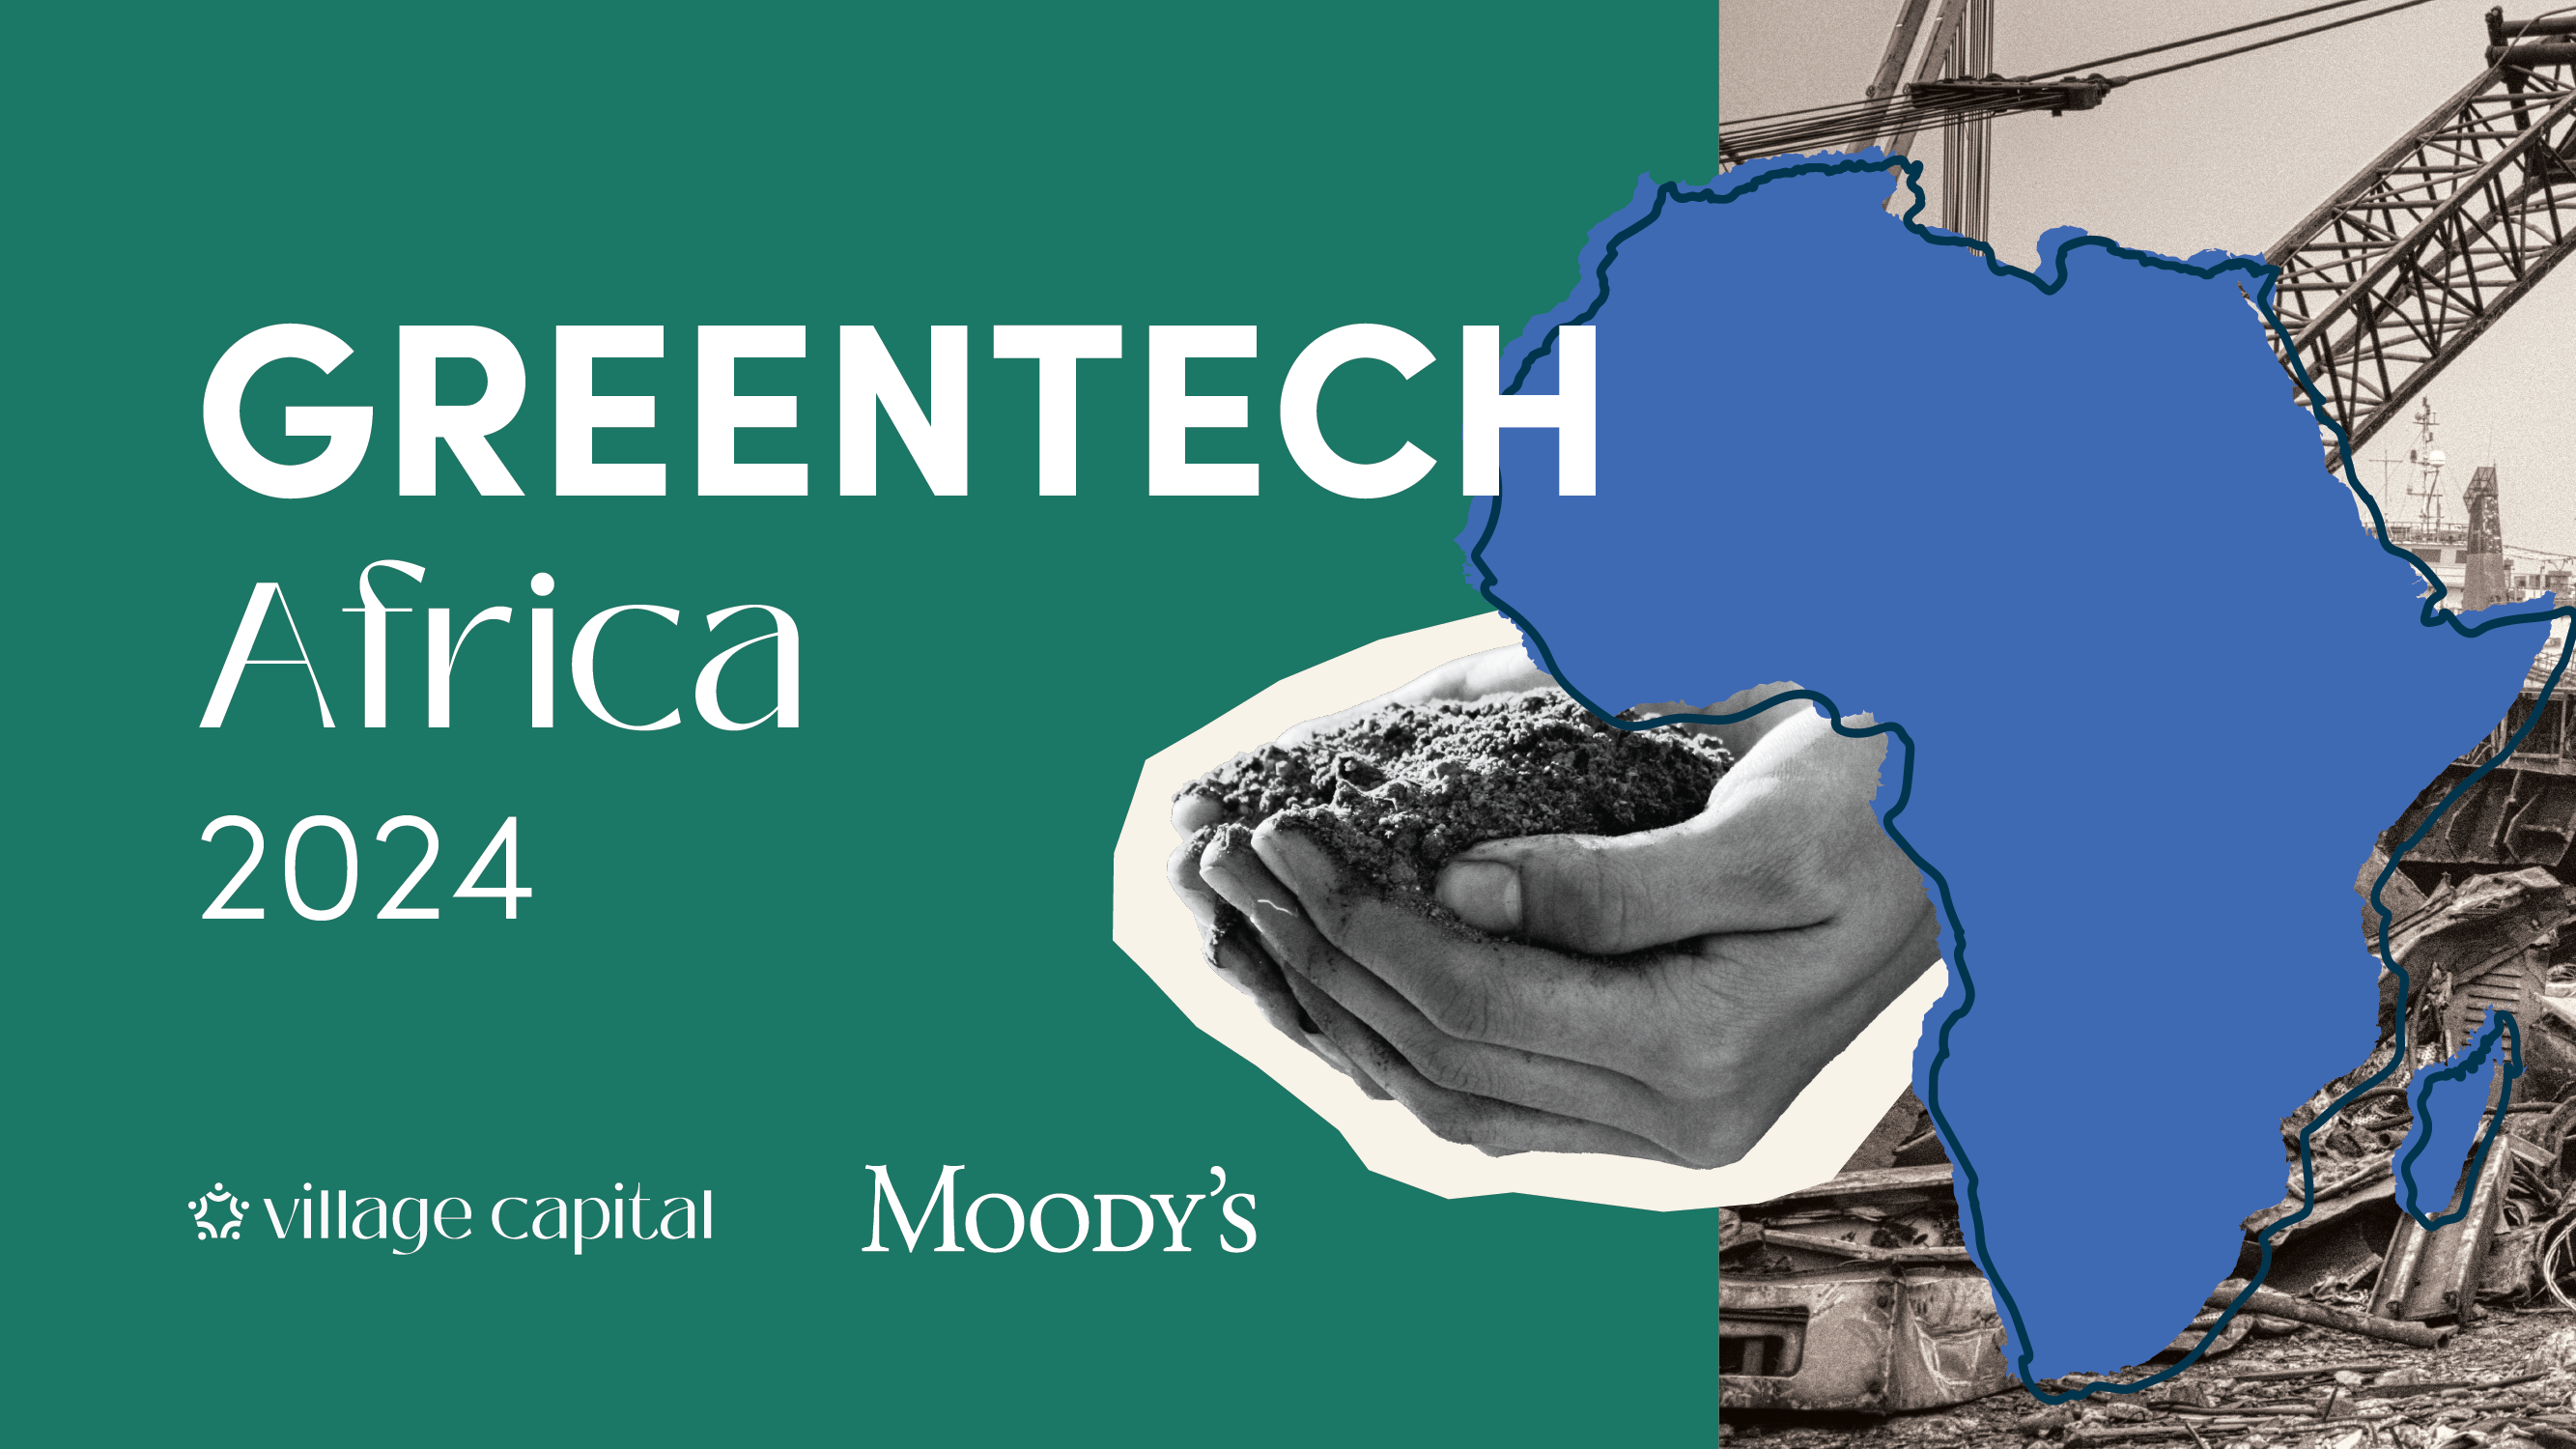 Greentech Moody-s 2024 Africa